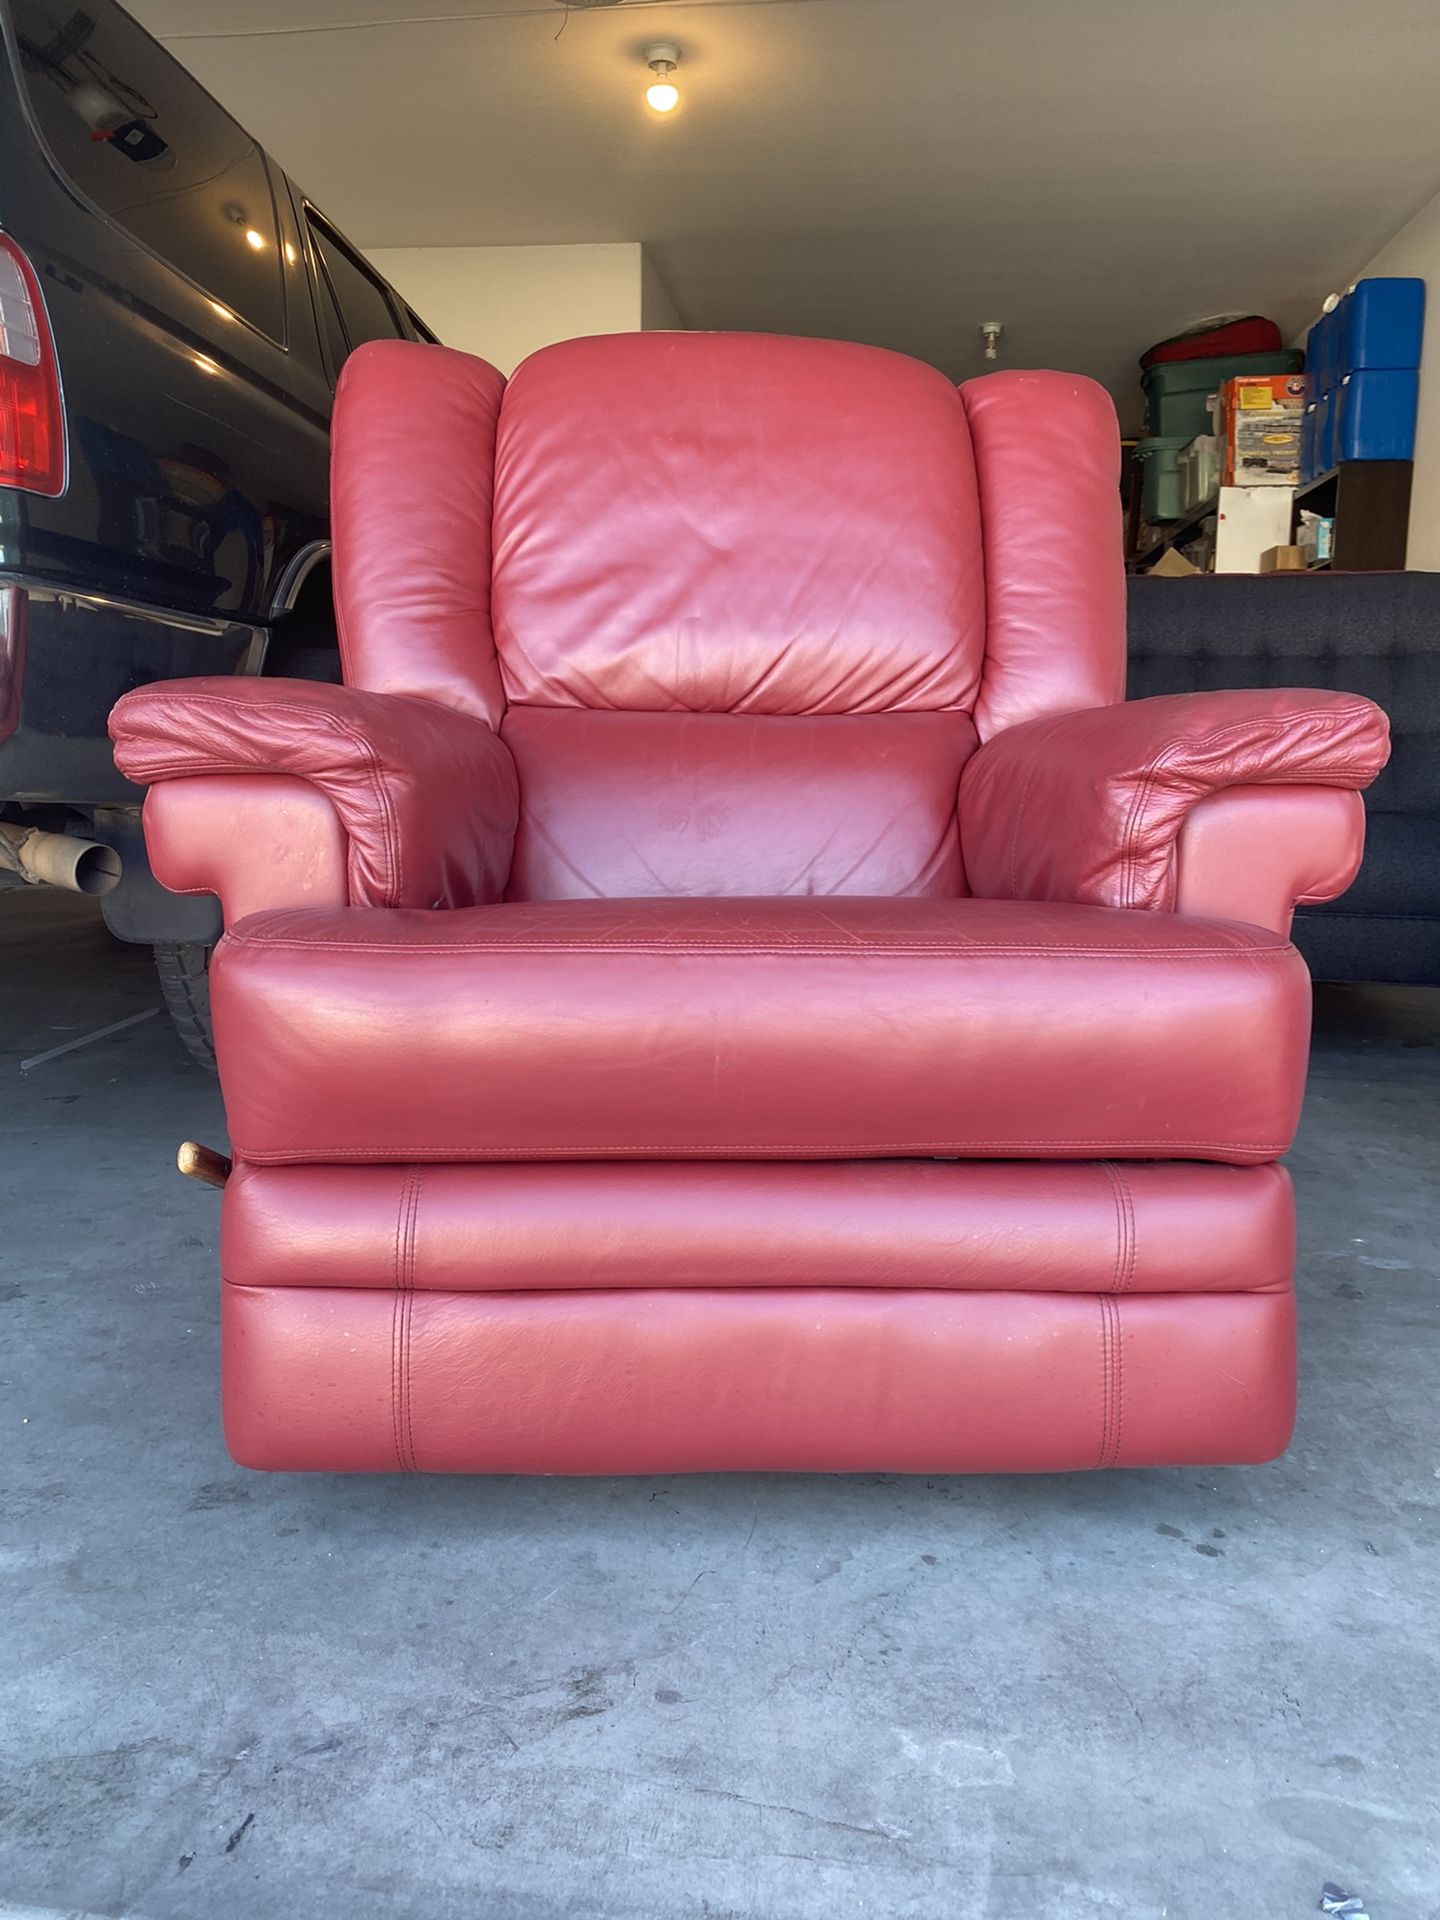 La-z-boy red leather recliner